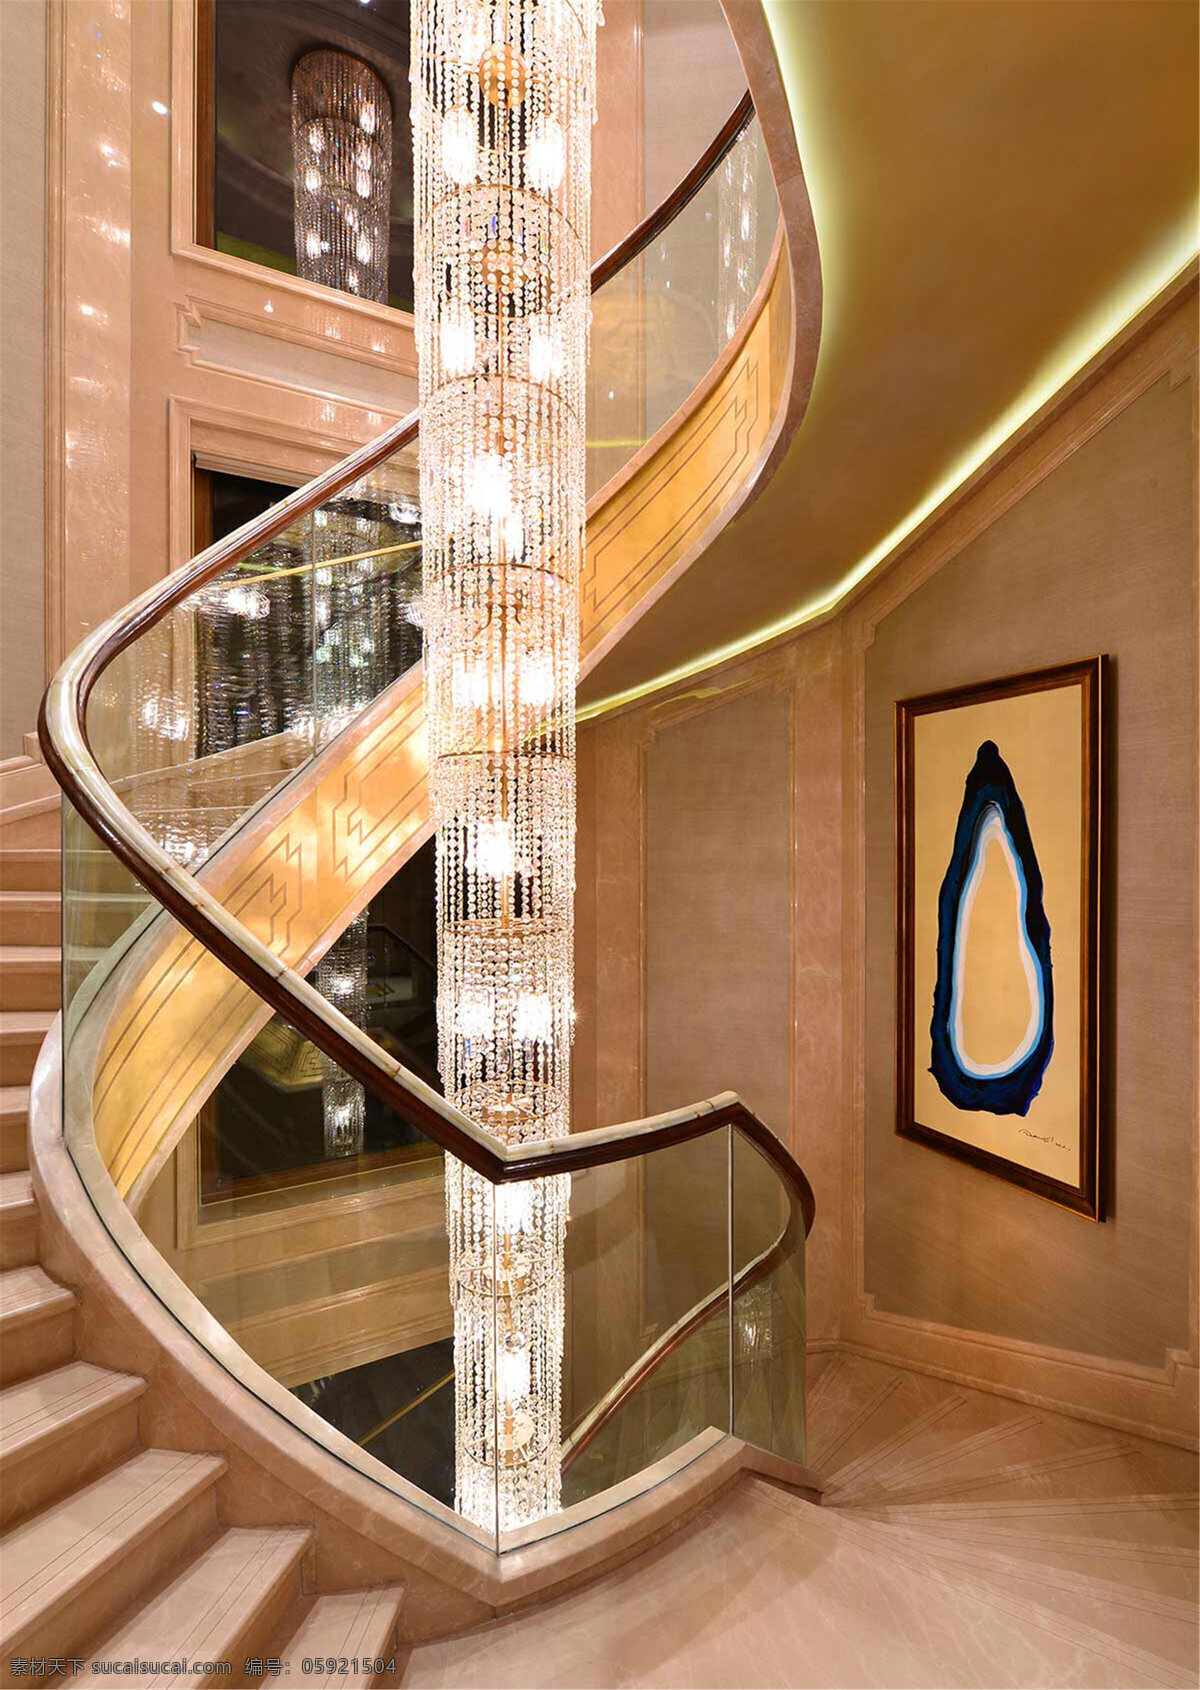 时尚 楼梯 吊灯 设计图 家居 家居生活 室内设计 装修 室内 家具 装修设计 环境设计